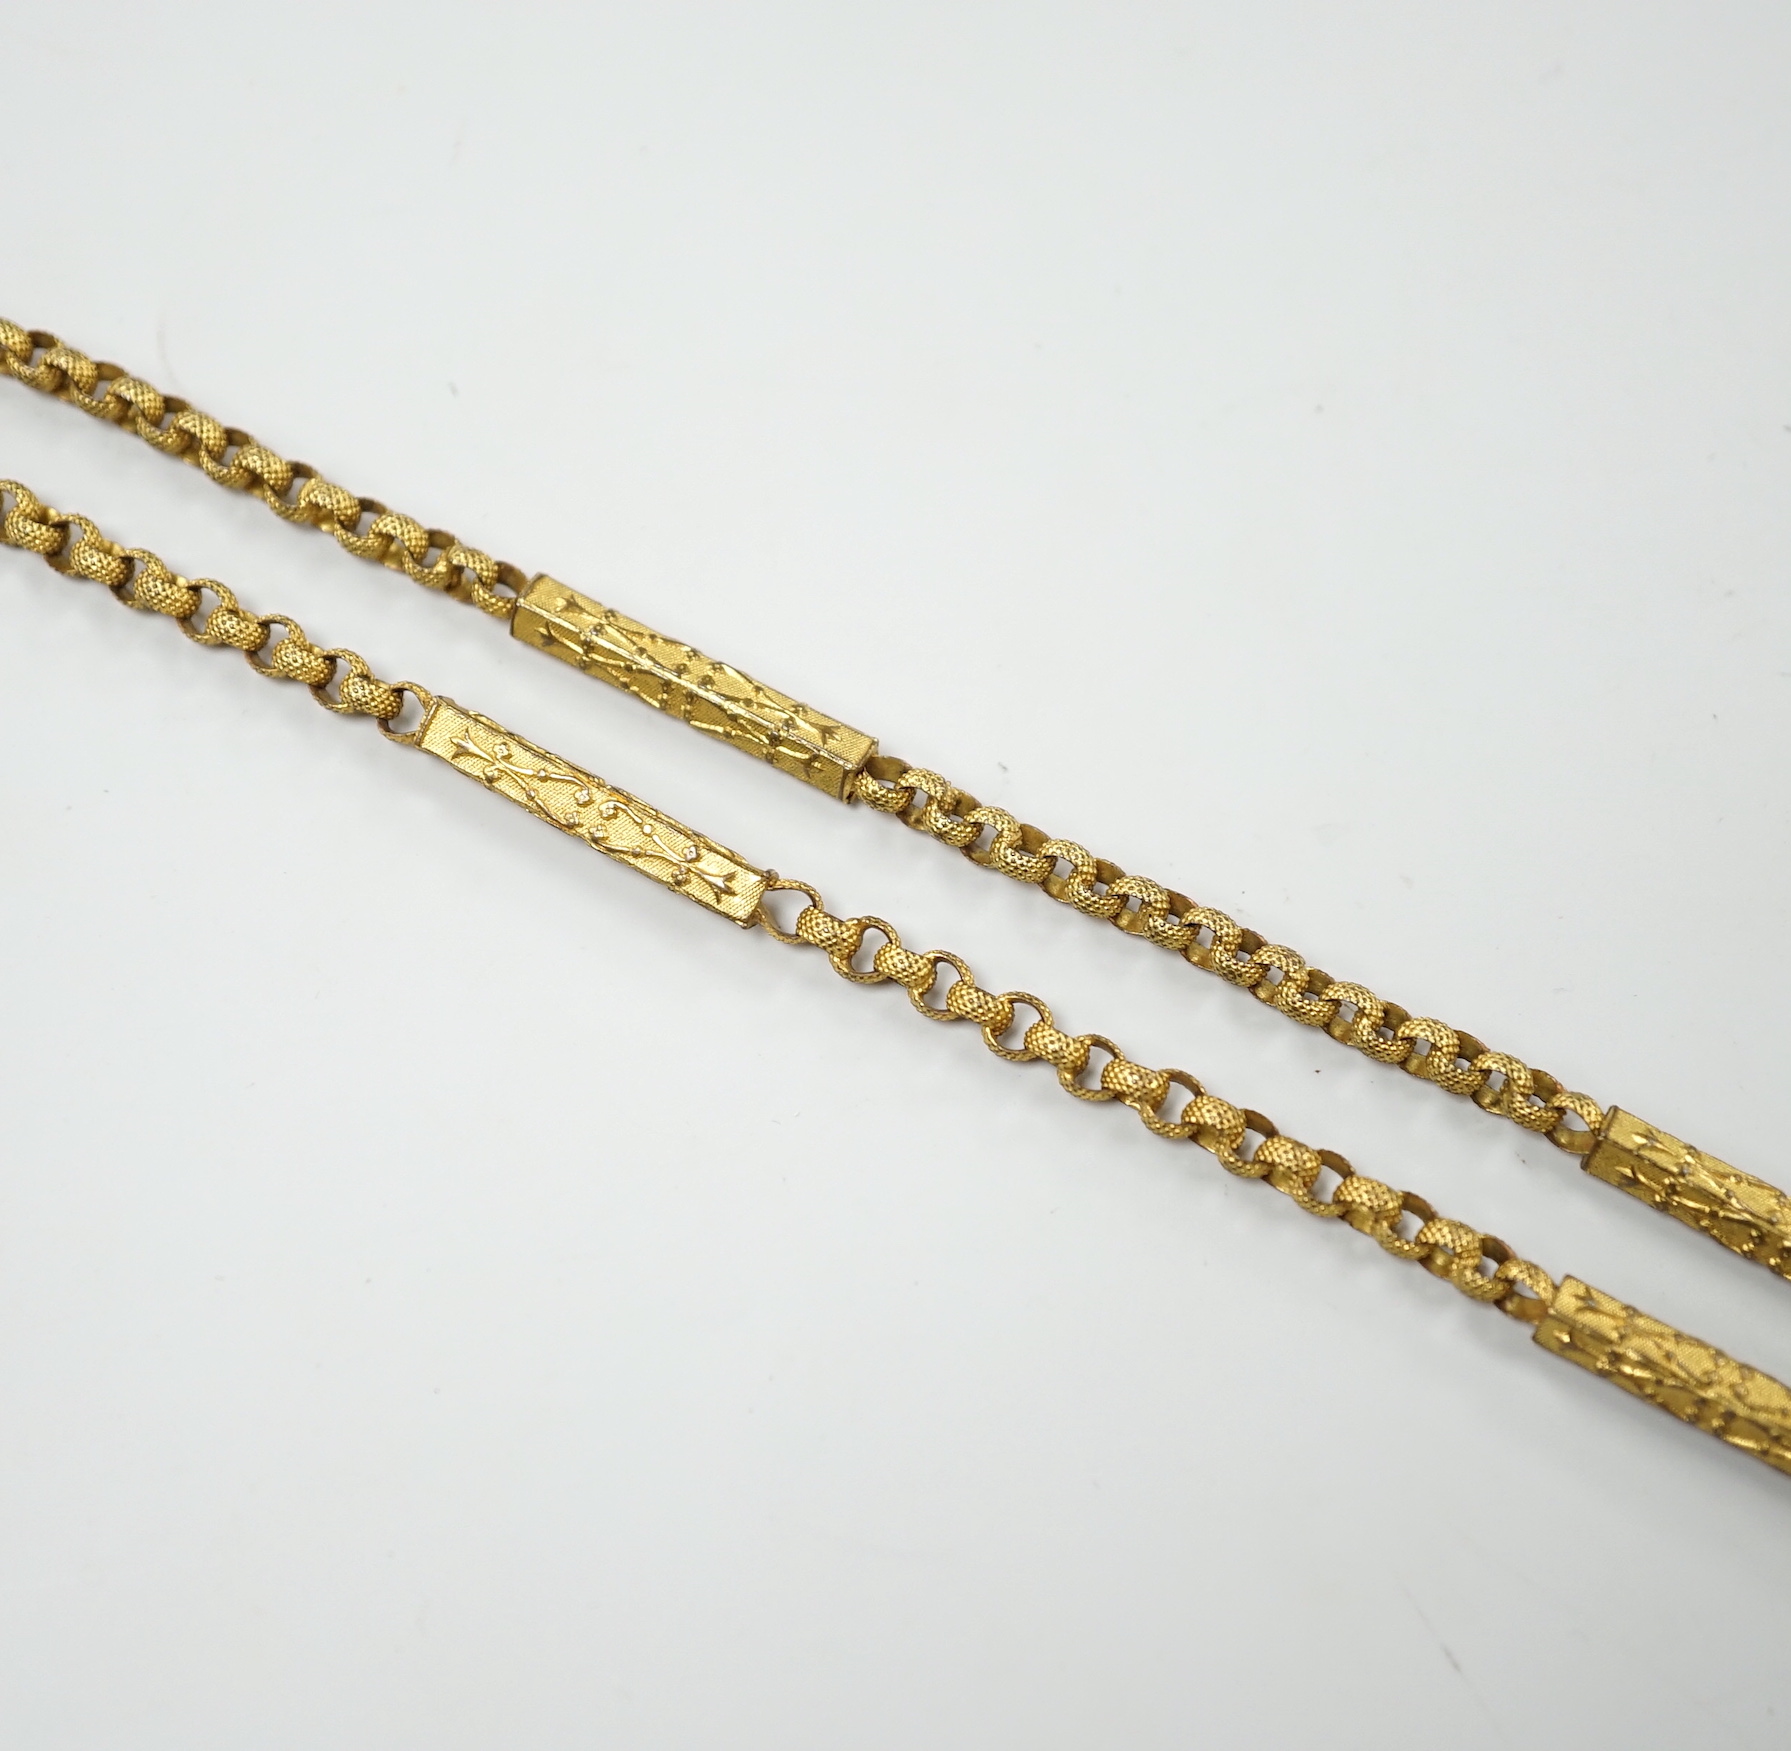 A Victorian pinchbeck chain, 103cm (a.f.).